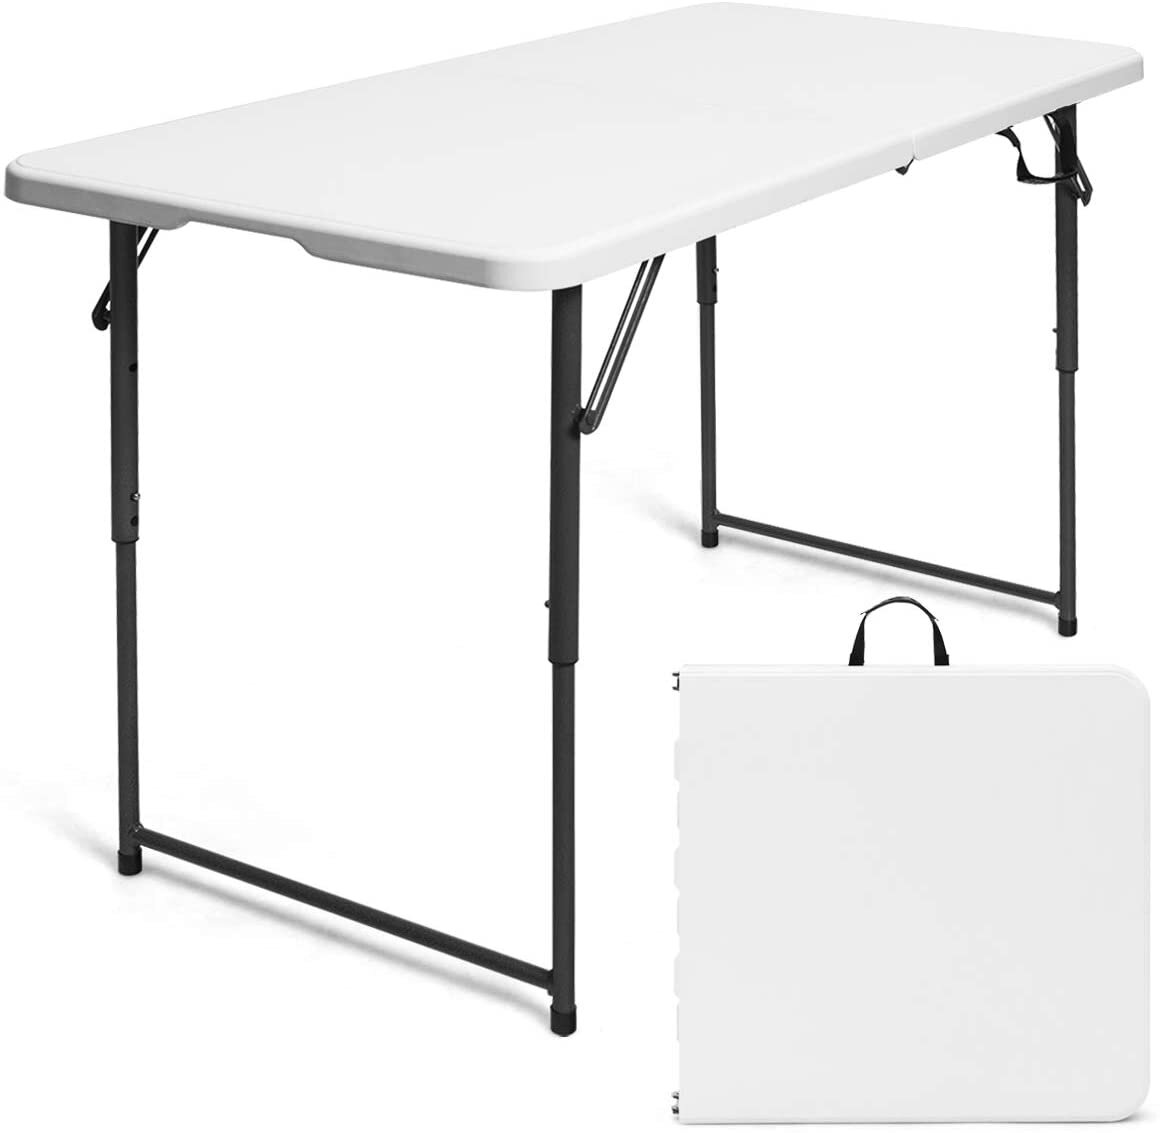 Tragbar Klappbar Campingtisch Gartentisch Falttisch Picknick Tisch Langlebig DHL 